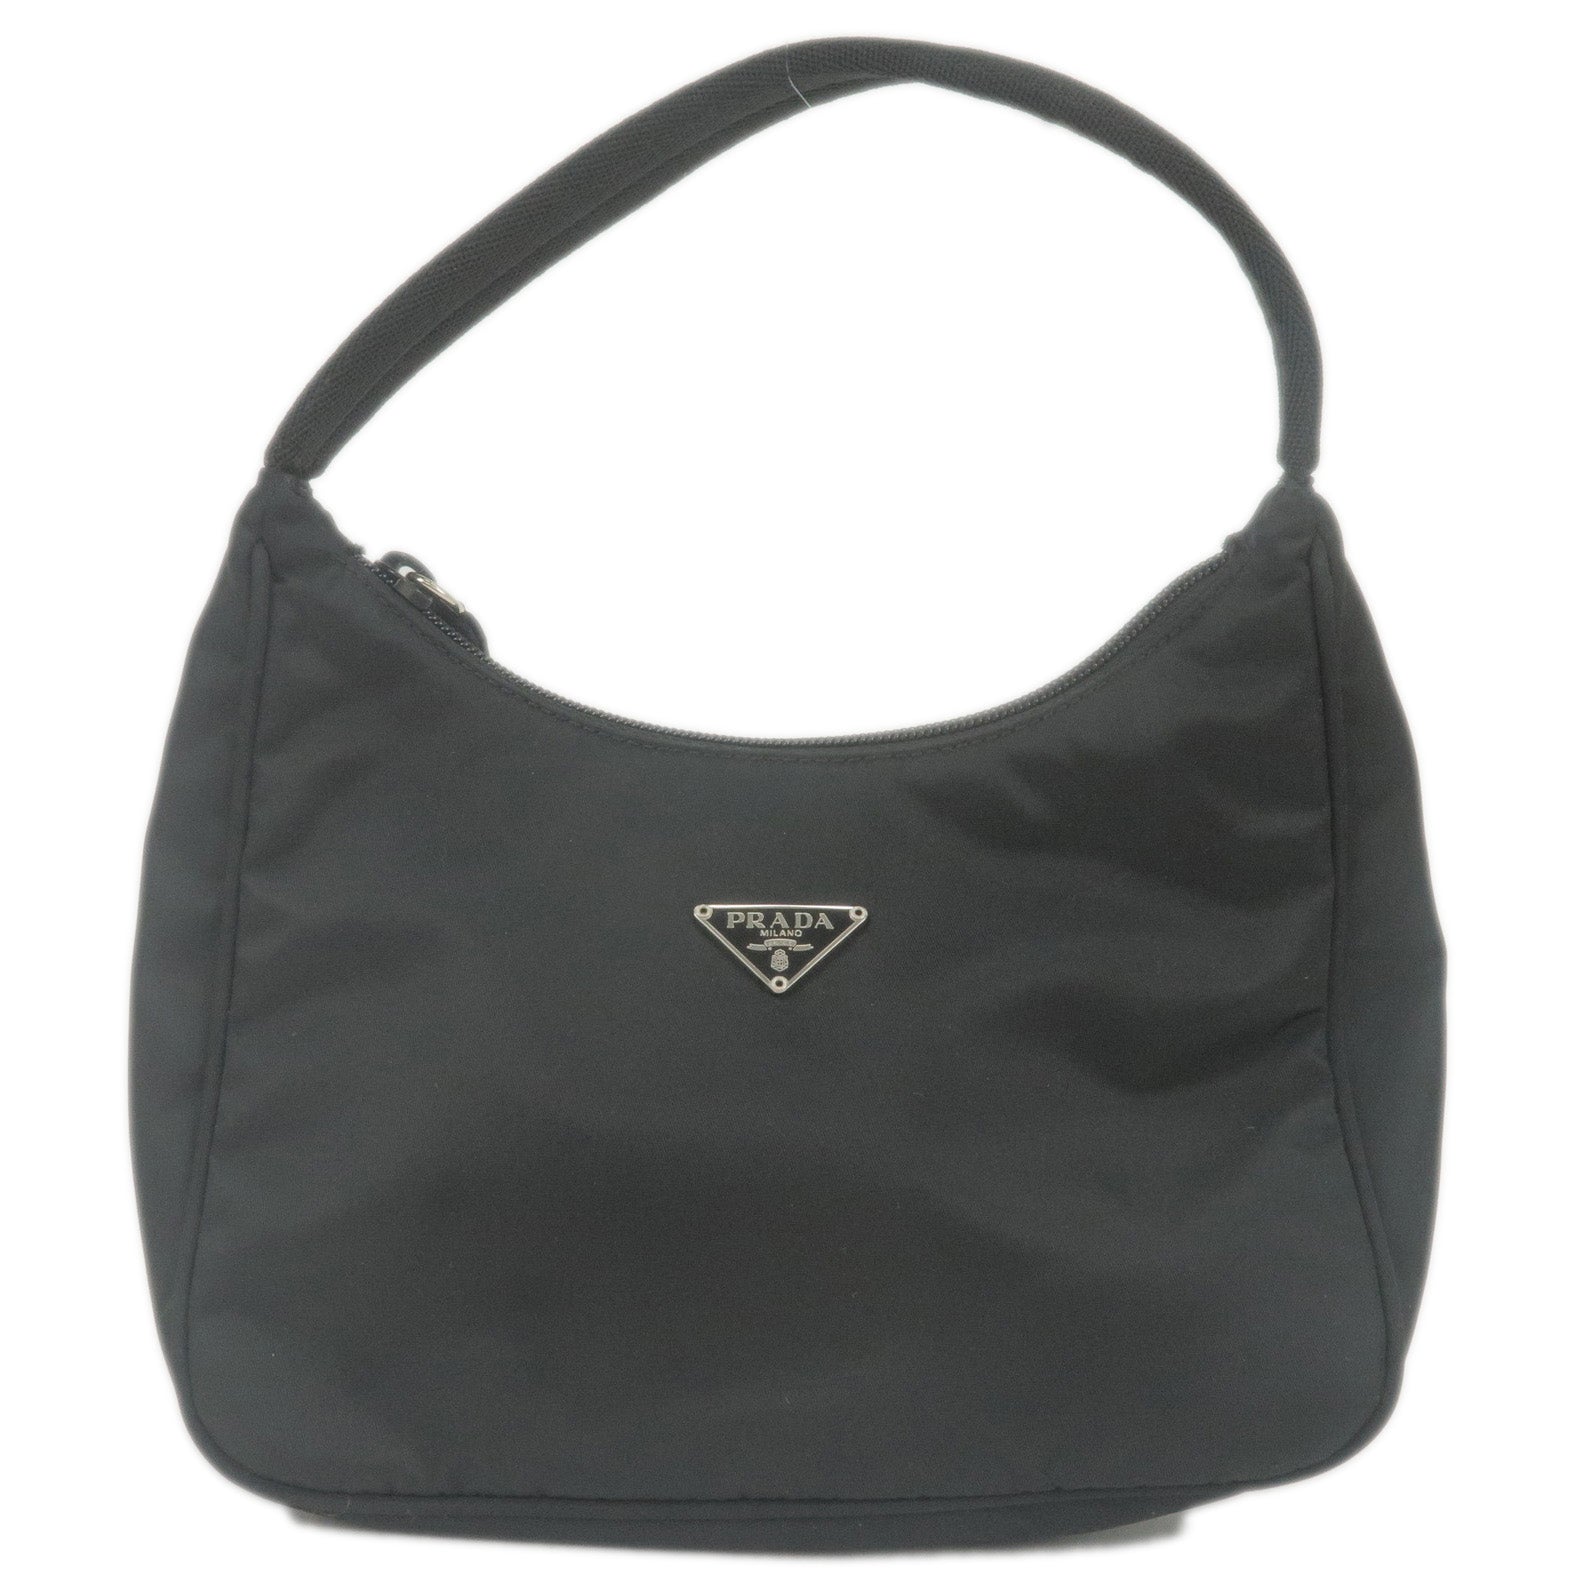 PRADA-Logo-Nylon-Pouch-Mini-Hand-Bag-Purse-NERO-Black-MV519